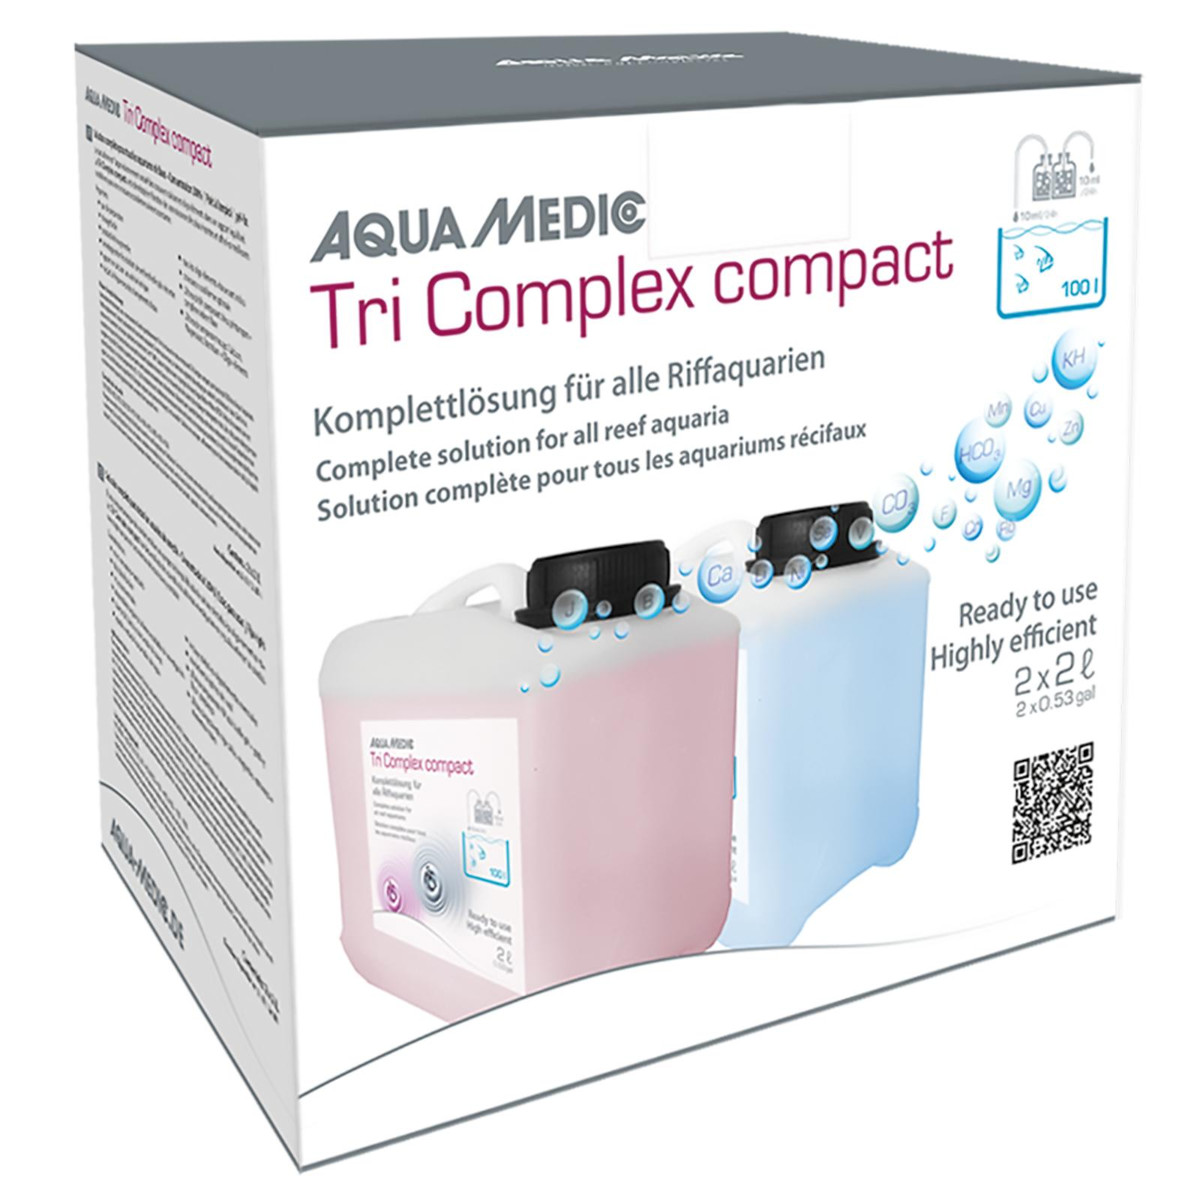 Aqua Medic Tri Complex compact 2x2 Liter Verpackung